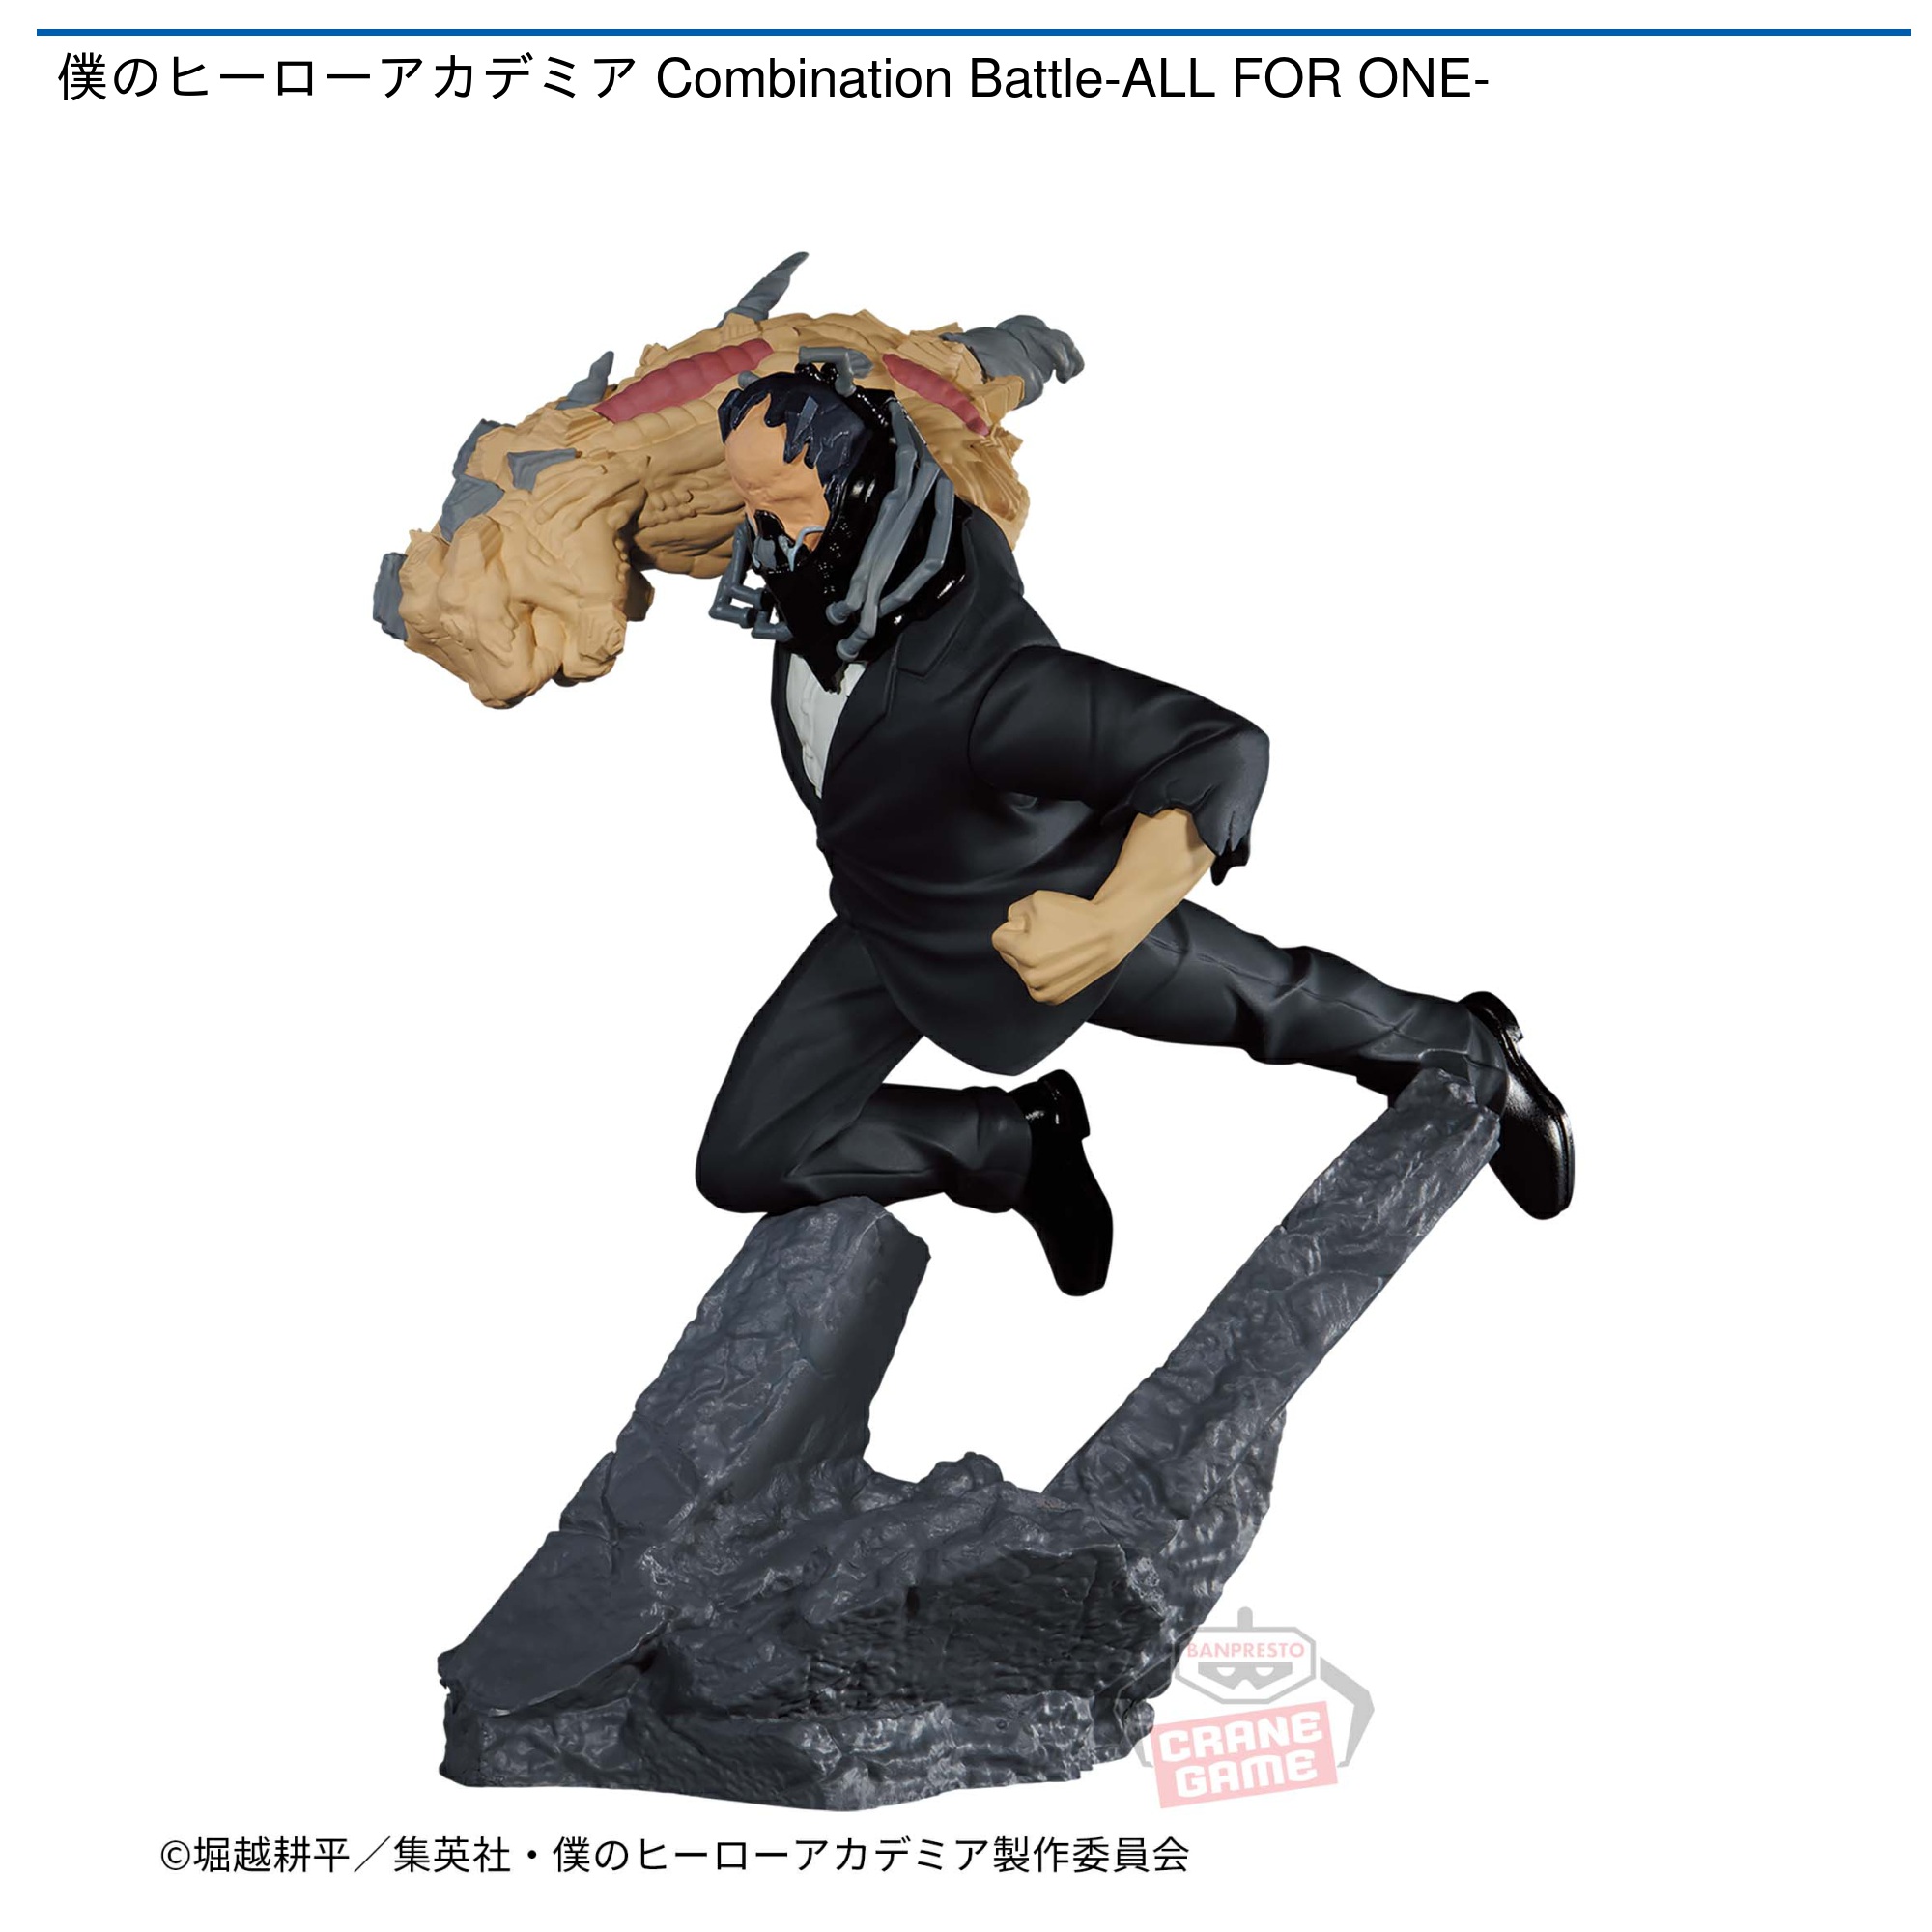 14,160円僕のヒーローアカデミア Combination Battle フィギュア